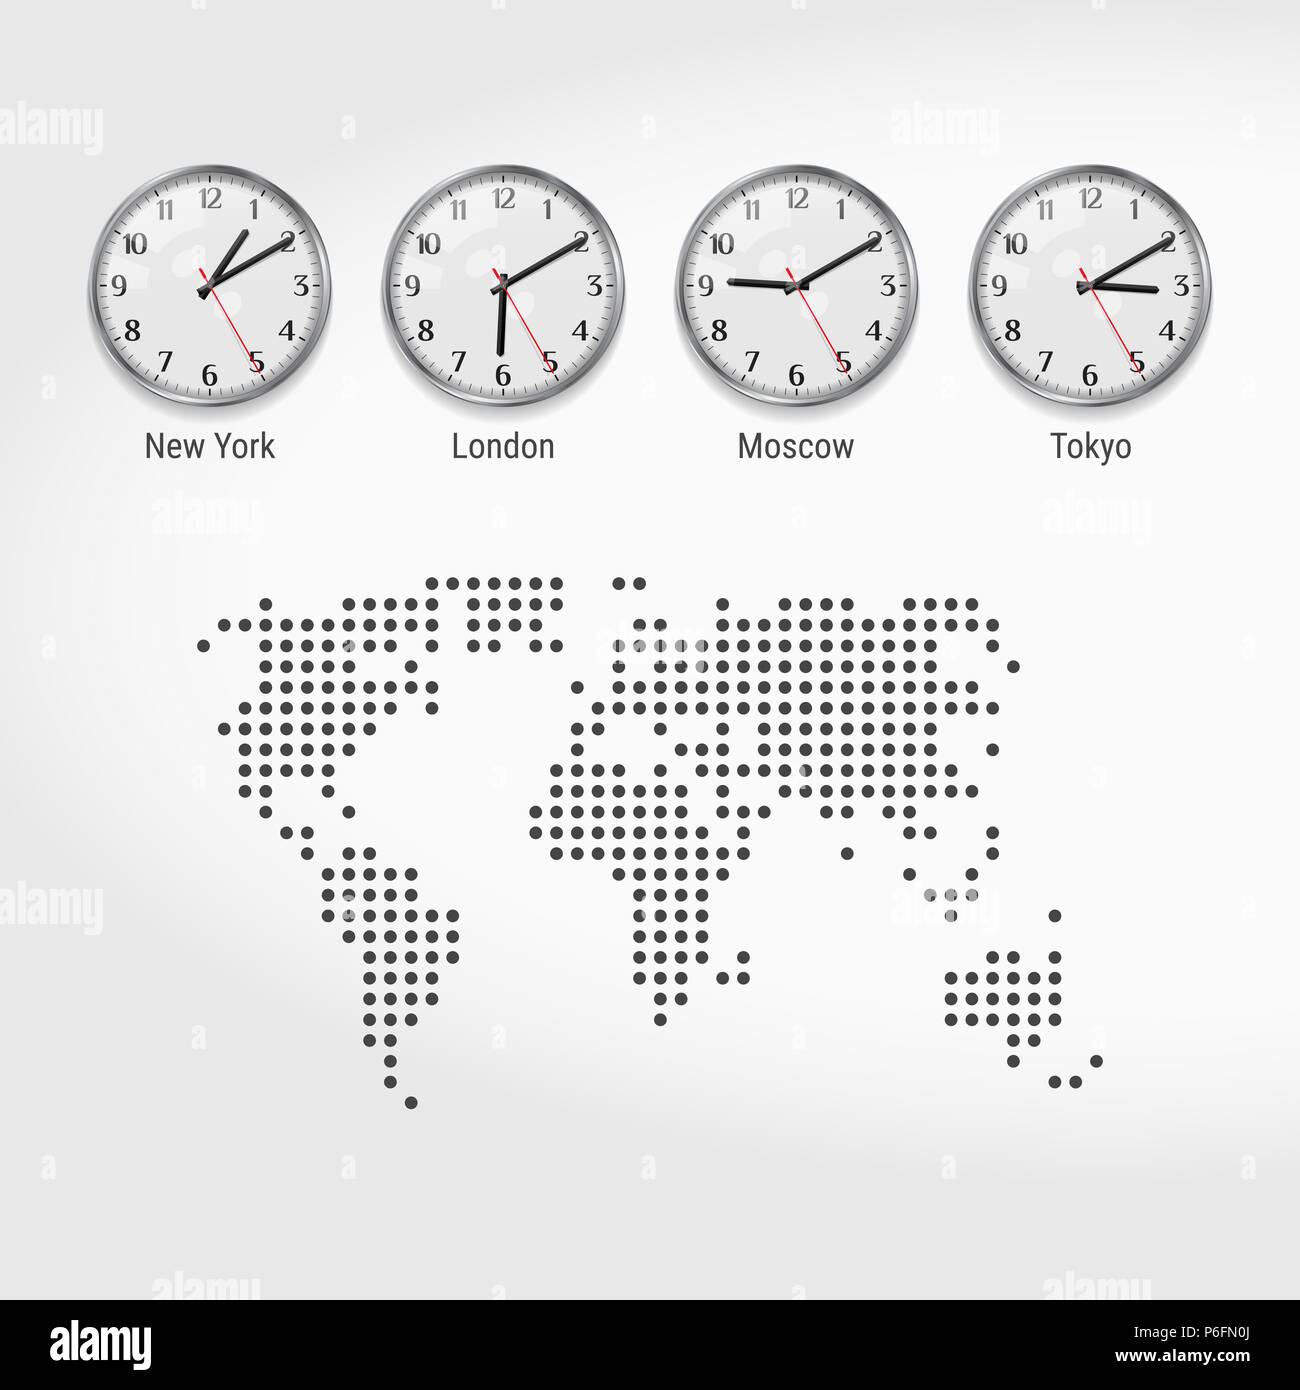 Les fuseaux horaires du monde des horloges. Heure actuelle dans les grandes  villes. Stock Exchange des horloges. New York, Londres, Moscou et Tokyo.  Heure locale à travers le monde. Parsemé Photo Stock -